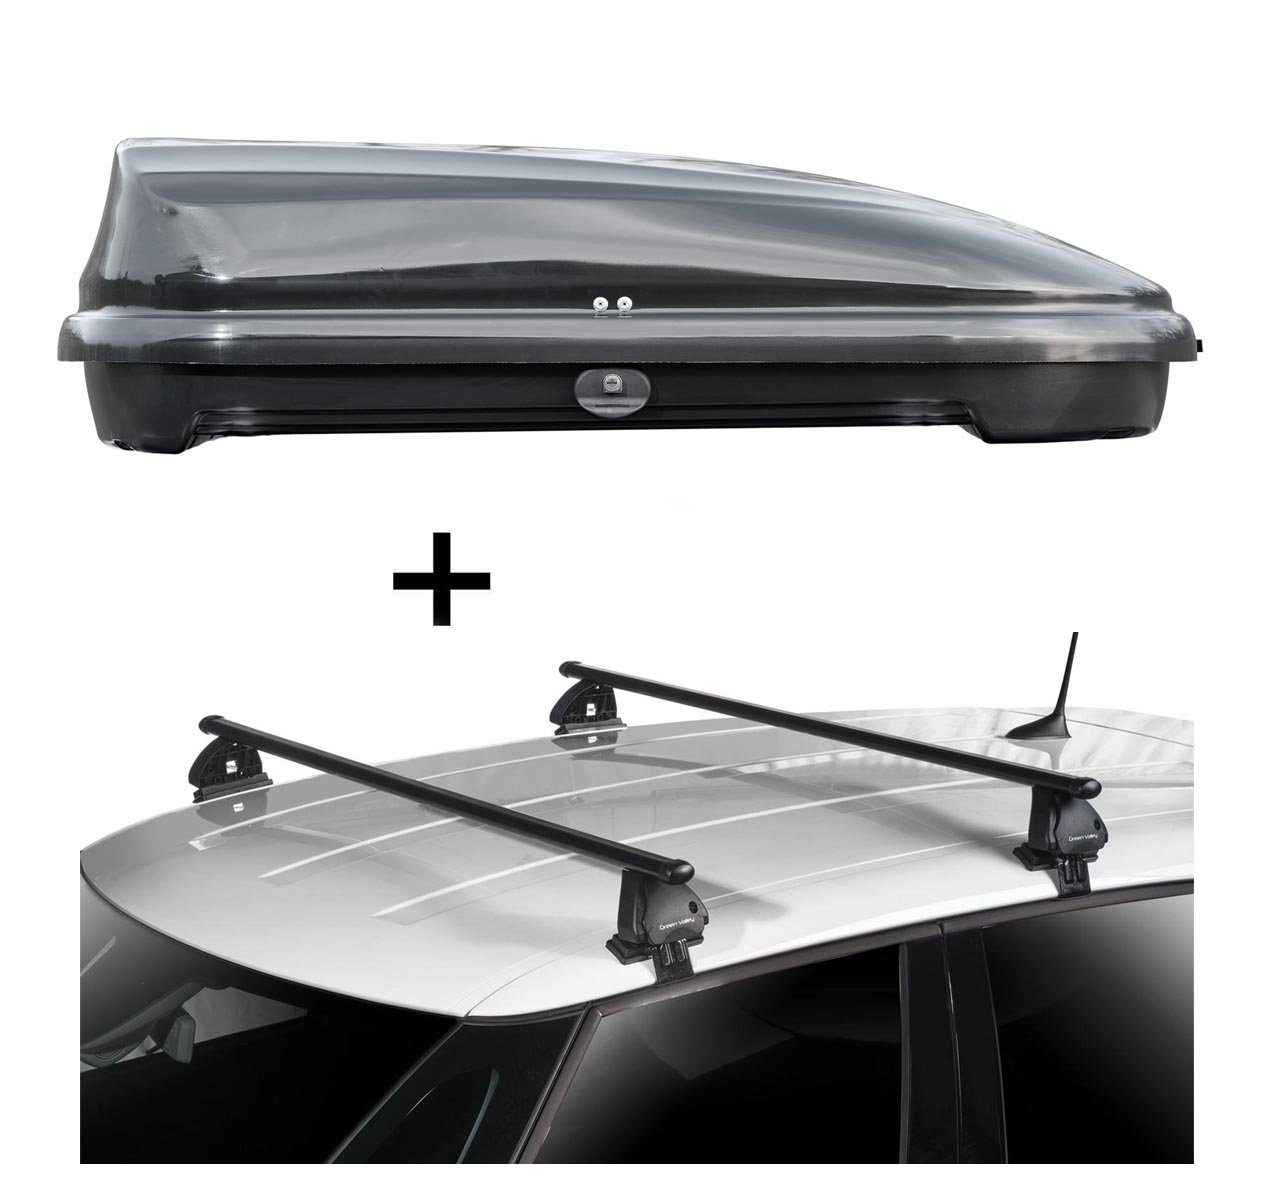 VDP Dachbox, Dachbox VDPFL320 320 Liter schwarz glänzend + Dachträger VDP EVO Stahl kompatibel mit Peugeot 508 4 Türer 2011-2018